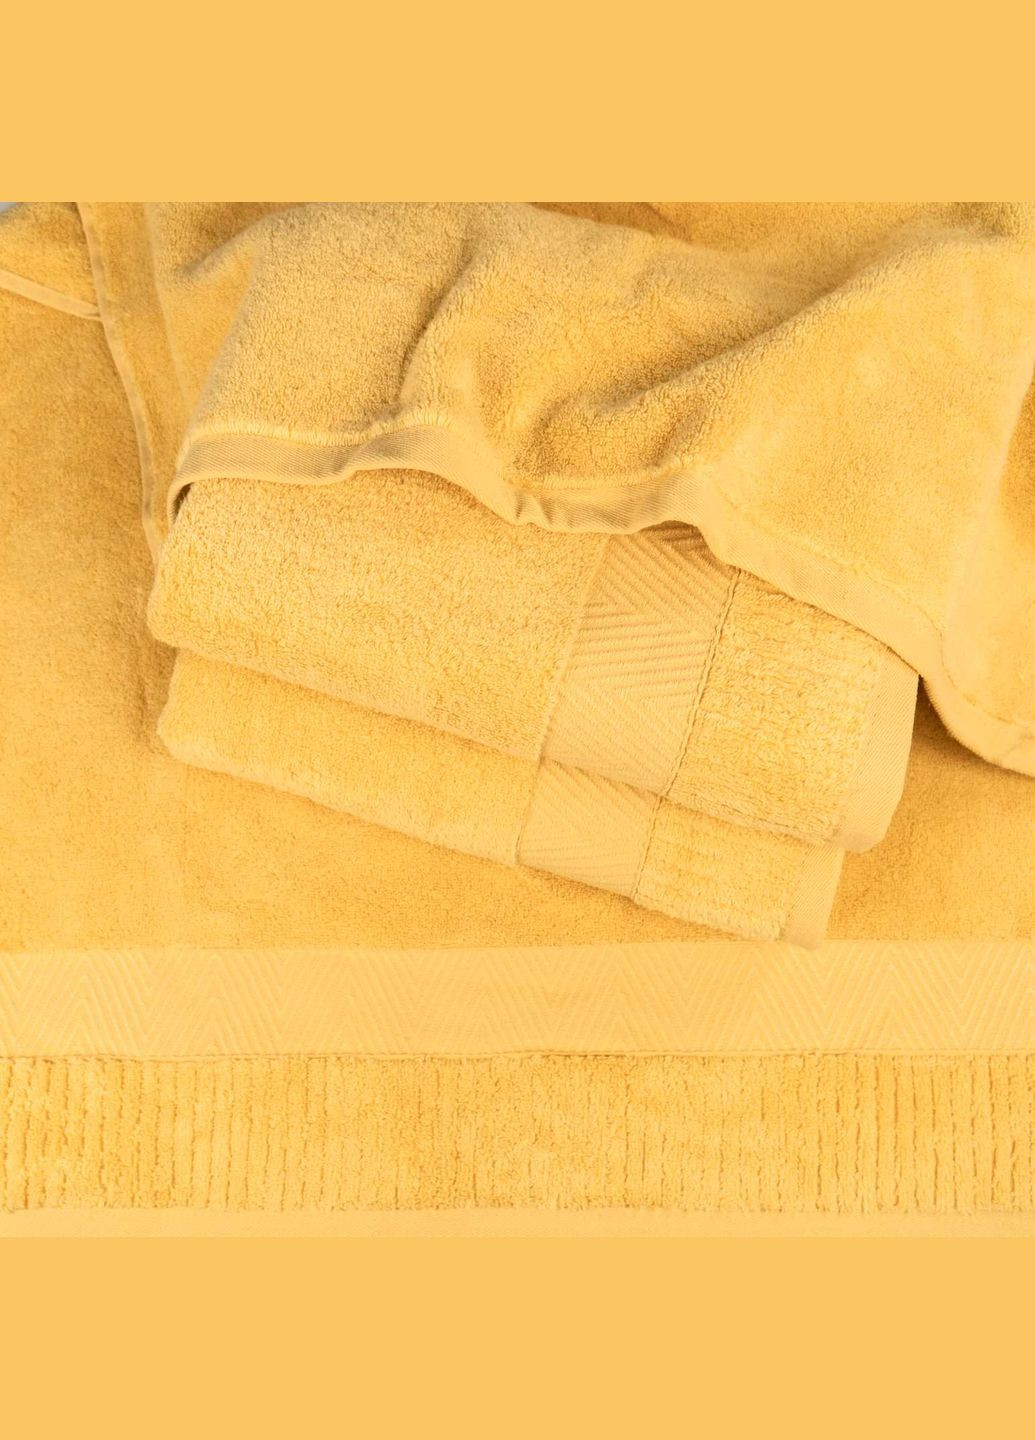 GM Textile махровий рушник 50x90см преміум якості зеро твіст бордюр 550г/м2 (жовтий) жовтий виробництво -